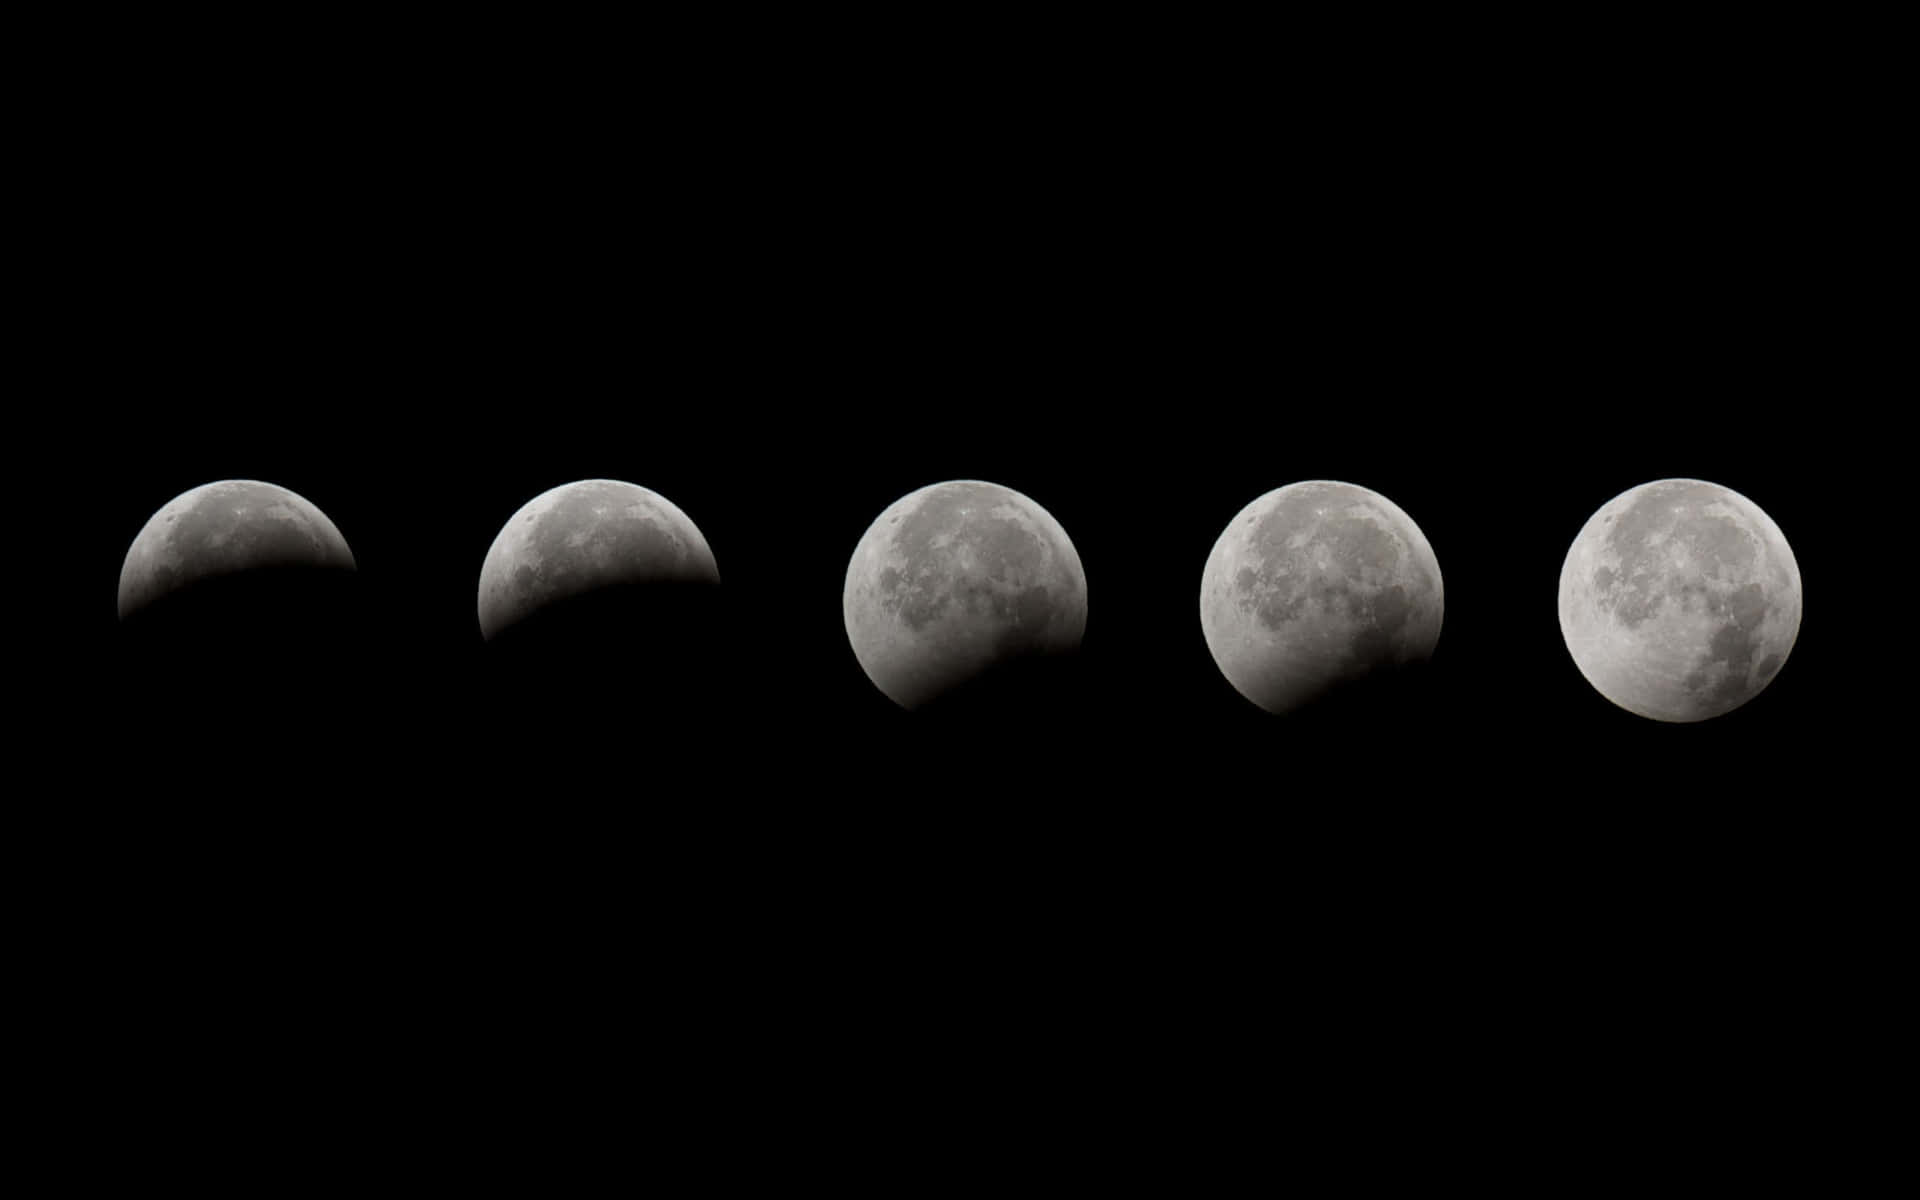 Tablade Fases Lunares: Una Imagen De Alta Calidad De Todas Las Fases De La Luna.